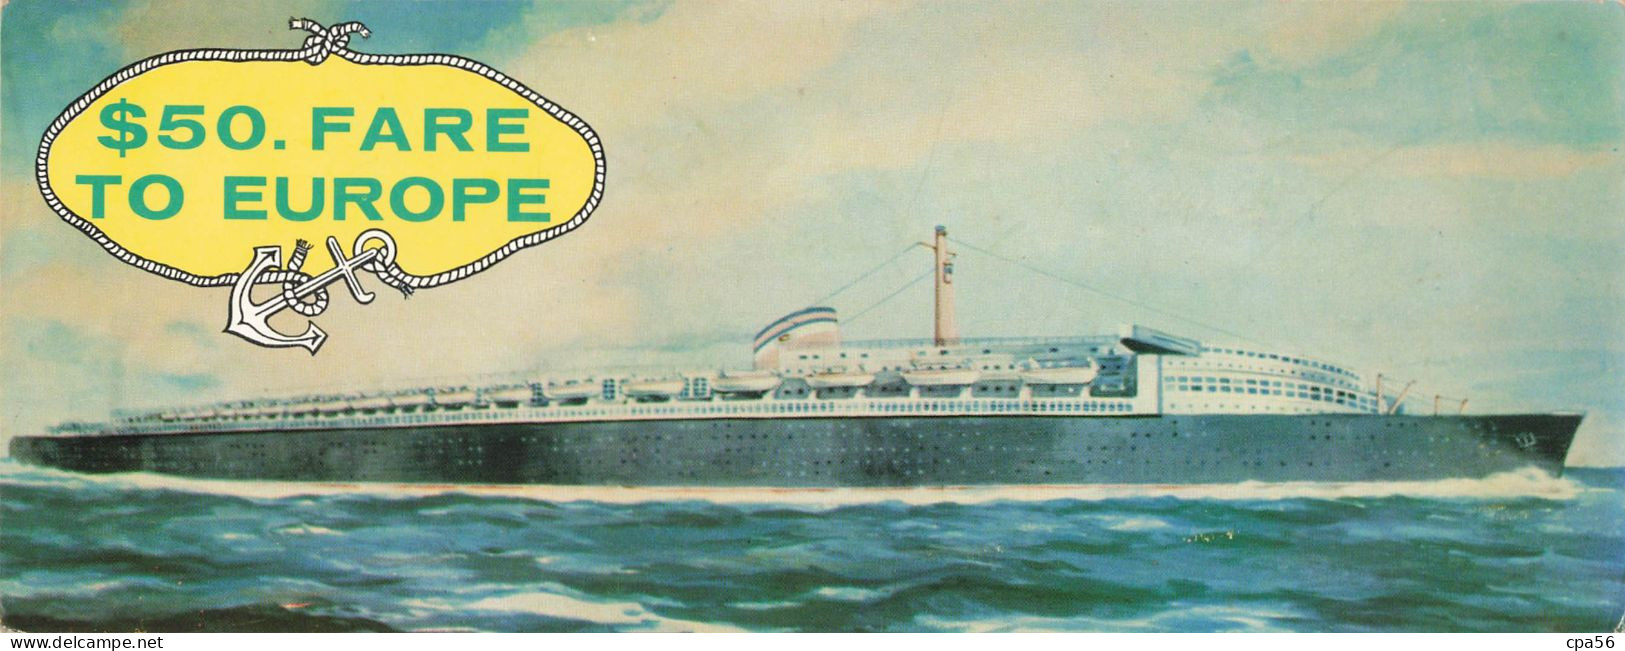 CARTE DOUBLE PANORAMIQUE PAQUEBOT - Publicité Sea Coach Transatlantic Lines - $50. FARE TO EUROPE - Hotel Dixie - Publicidad